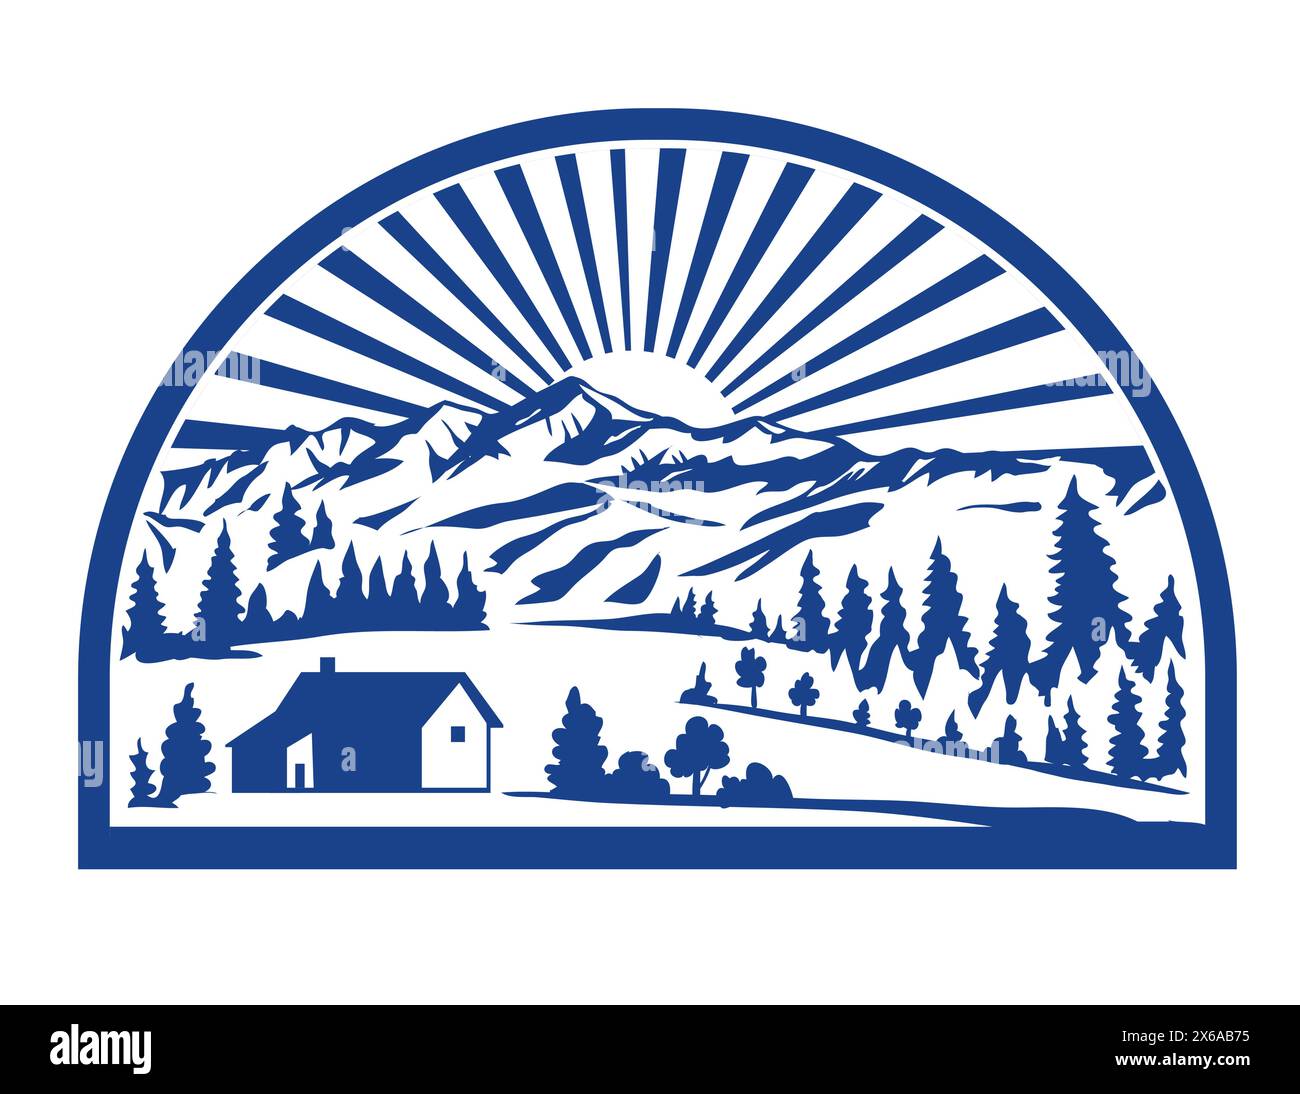 Illustration im Retro-Stil eines abgelegenen alpinen Dorfes oder Weilers mit Tälern und Gebirgszügen und Sonnenaufgang im Hintergrund im Halbkreis auf iso Stock Vektor